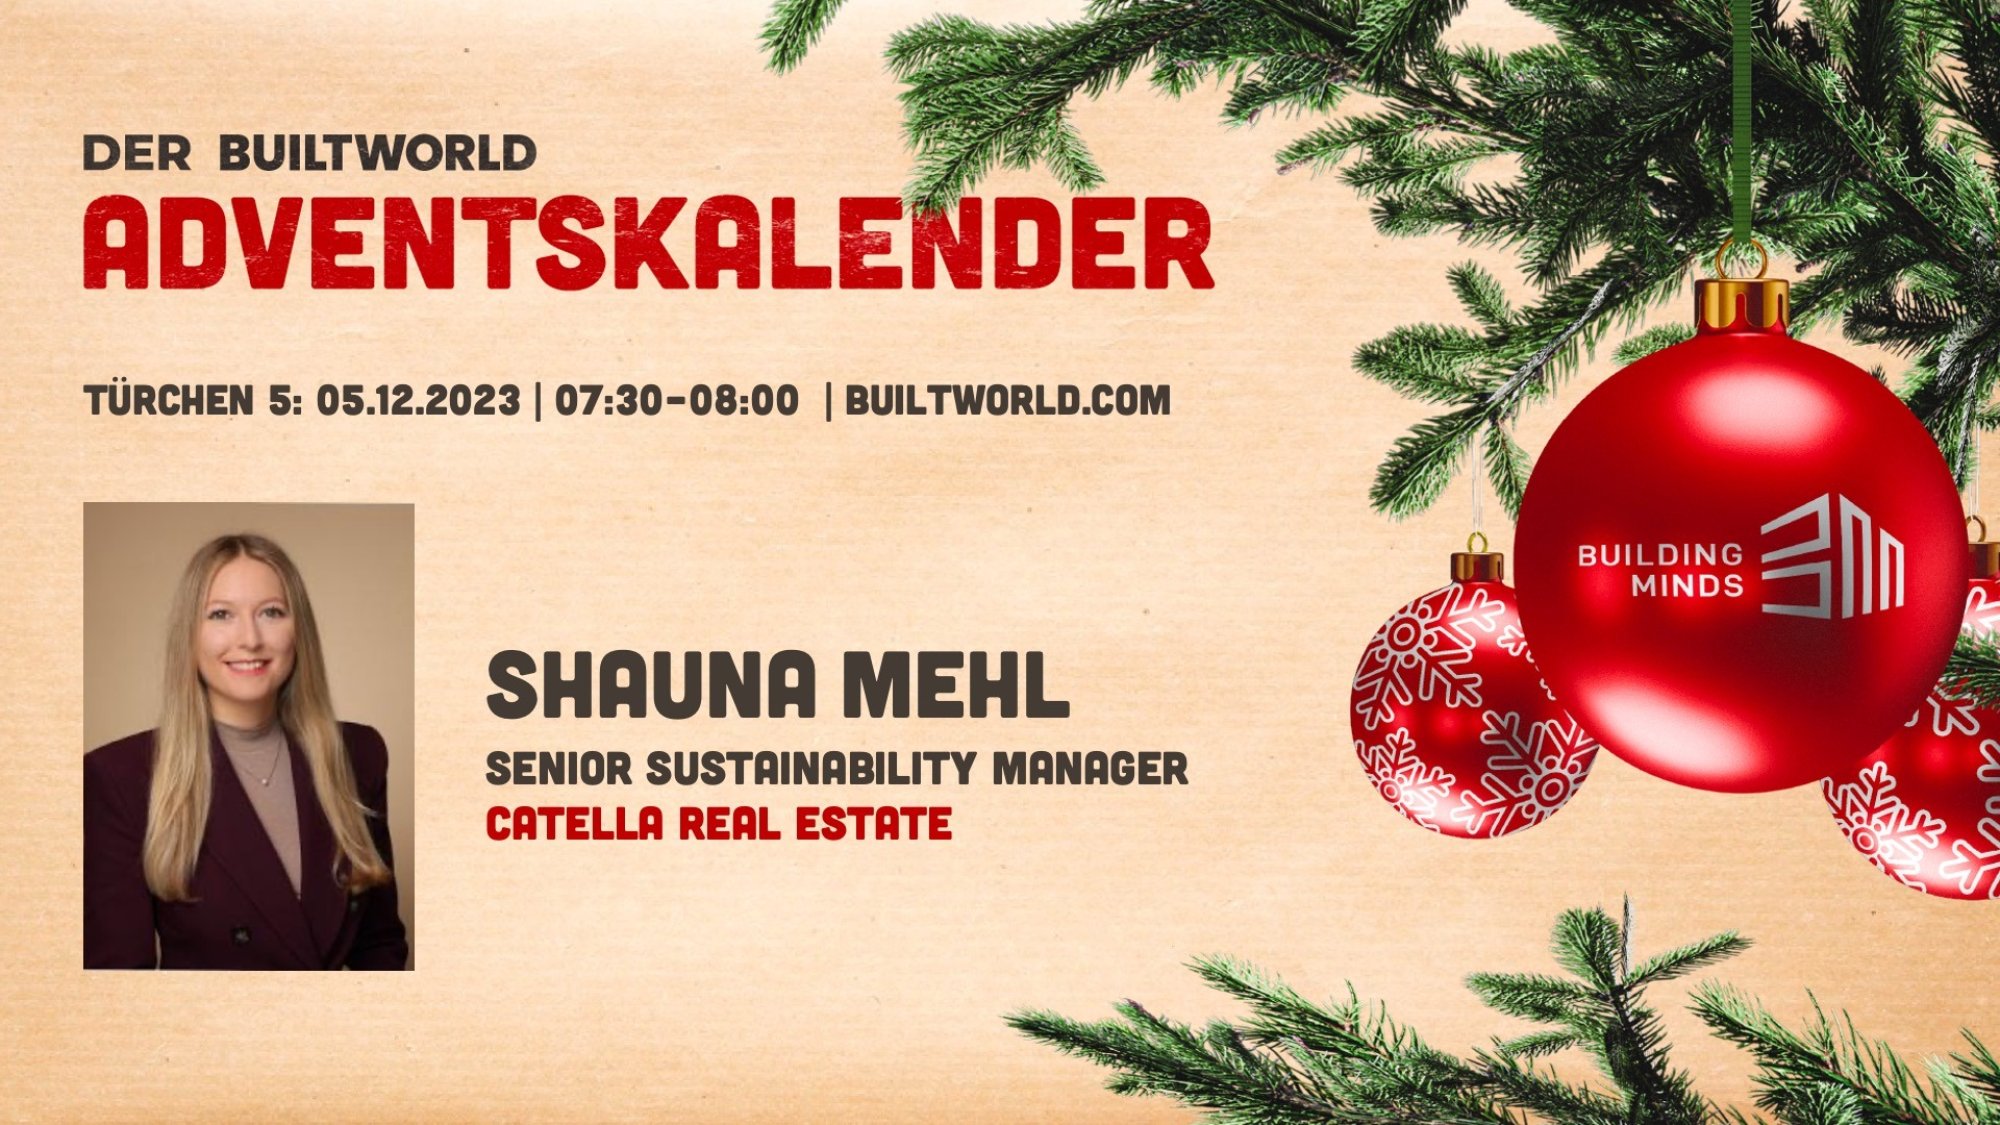 builtworld-adventskalender-2023-tuerchen-5